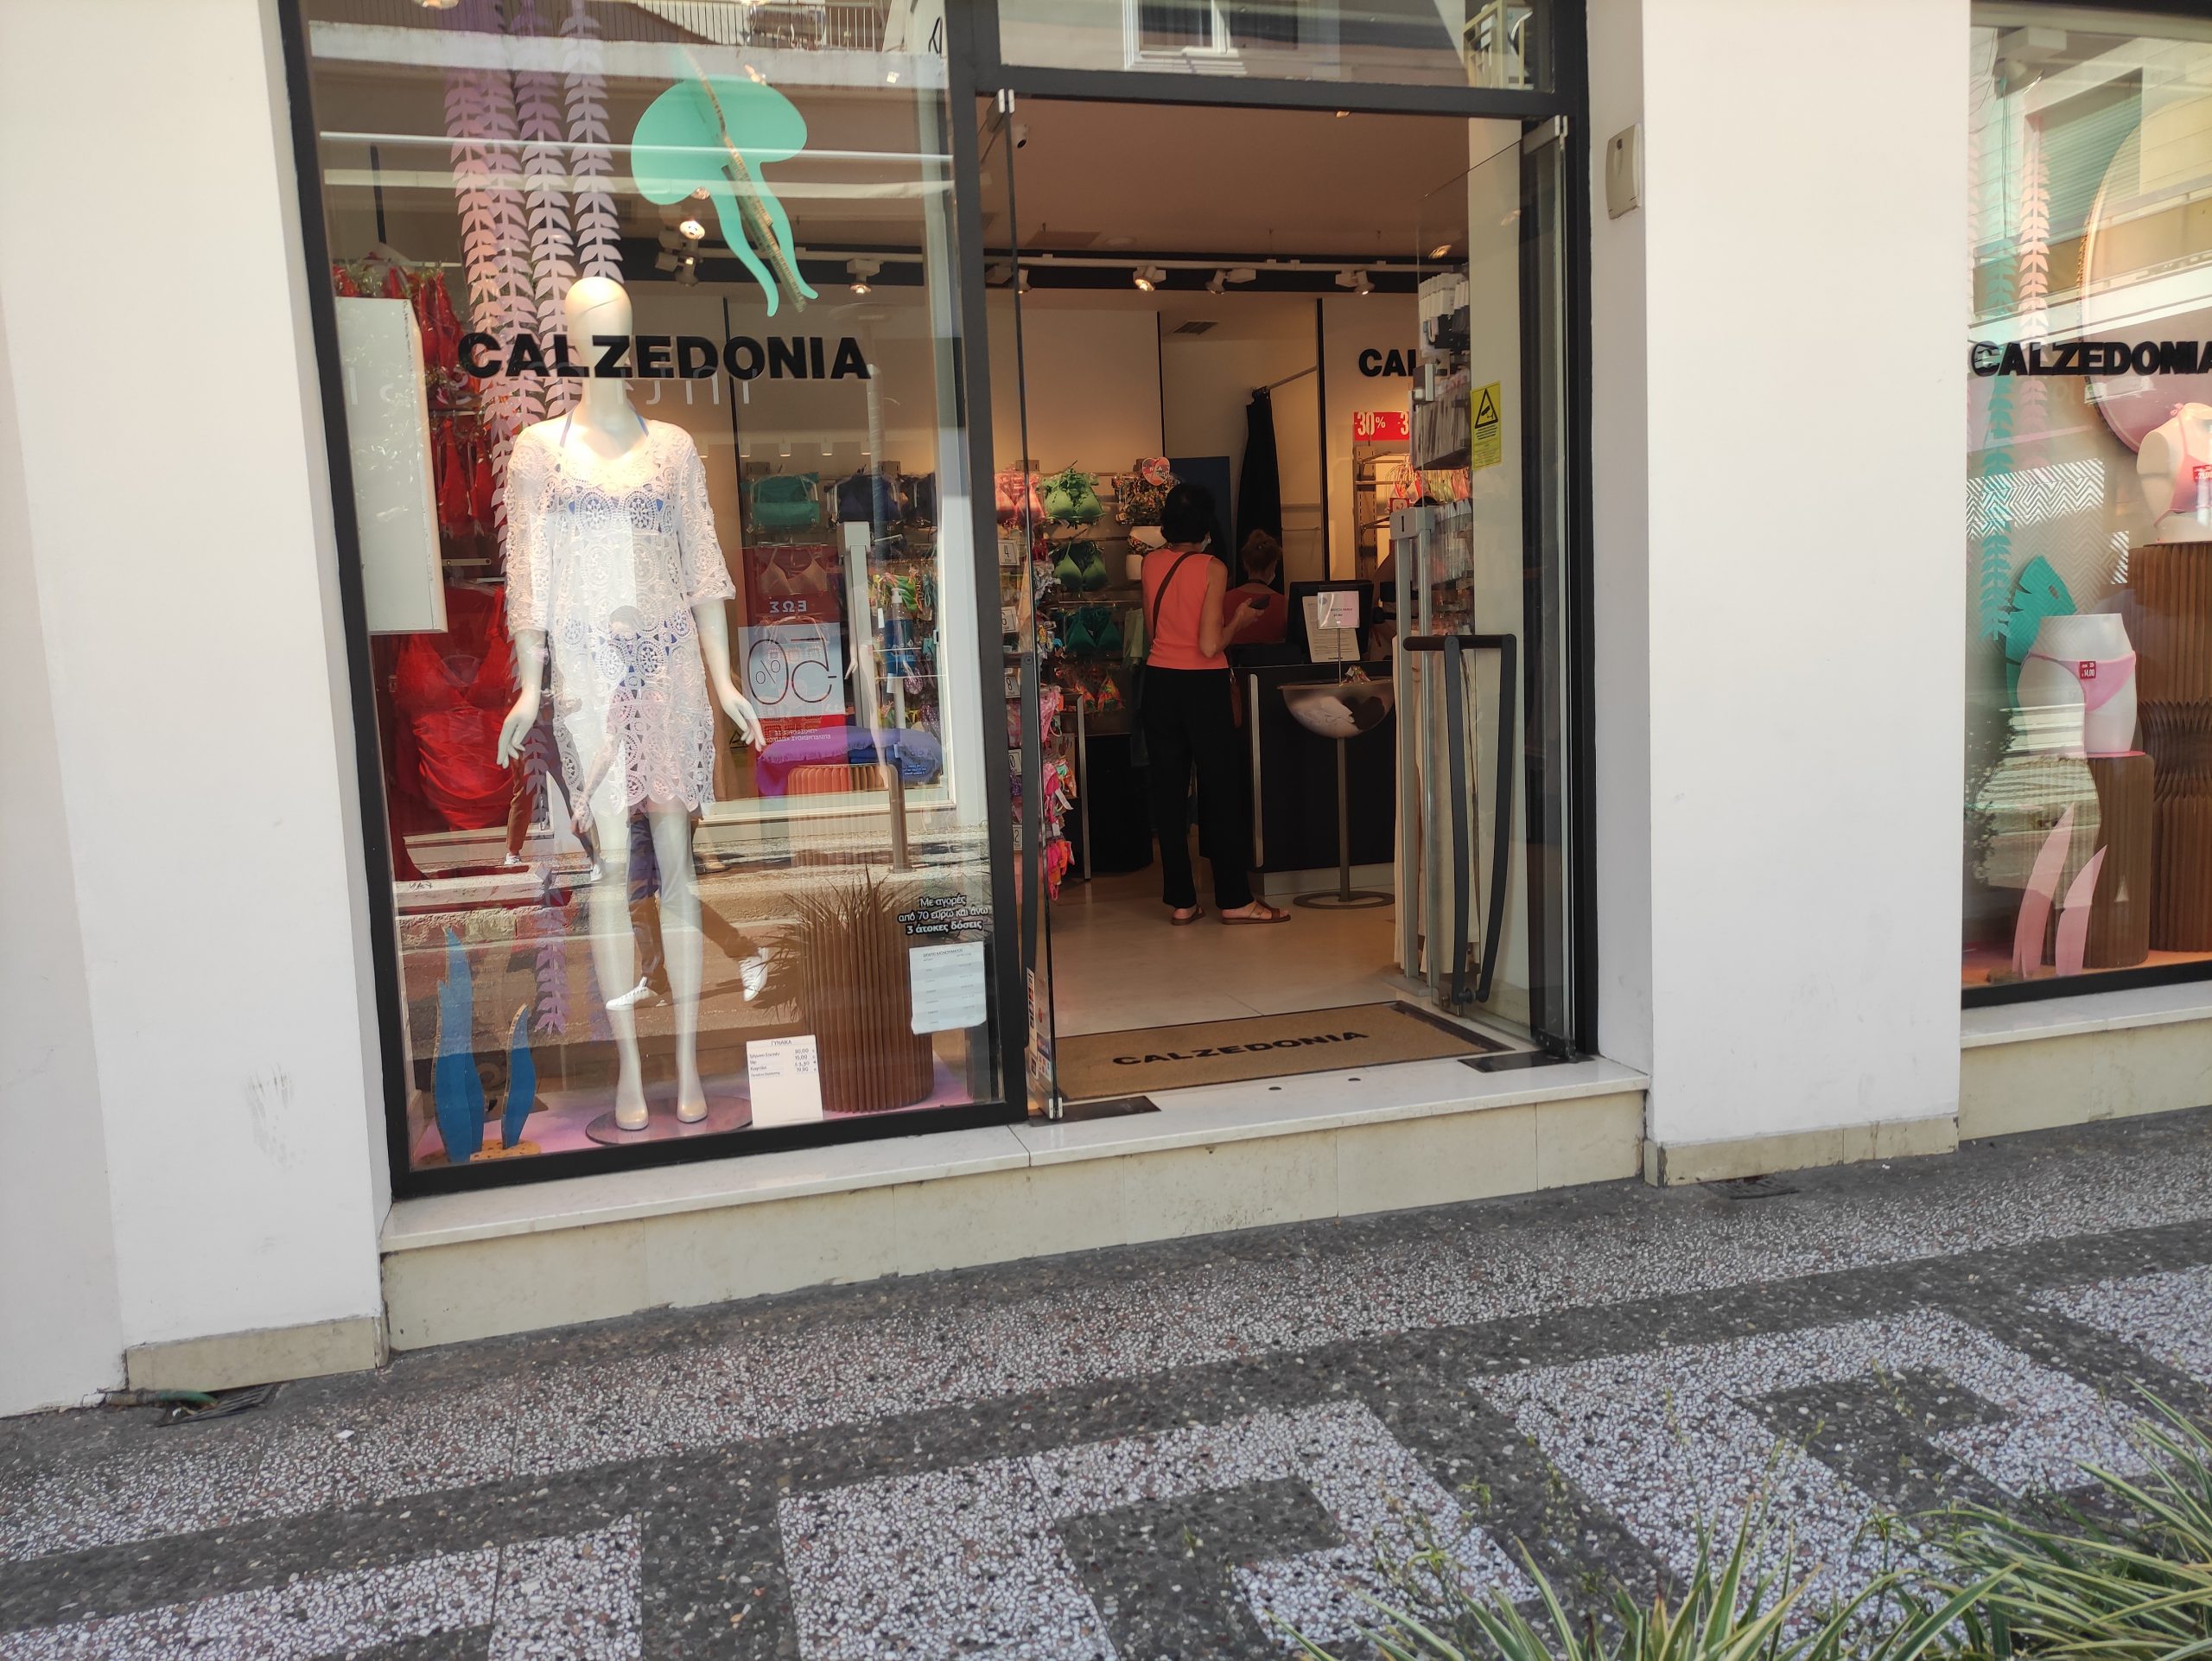 Πρώτο Σάββατο Ιουλίου με τα περισσότερα εμπορικά καταστήματα ανοικτά στο Αγρίνιο (φωτο)